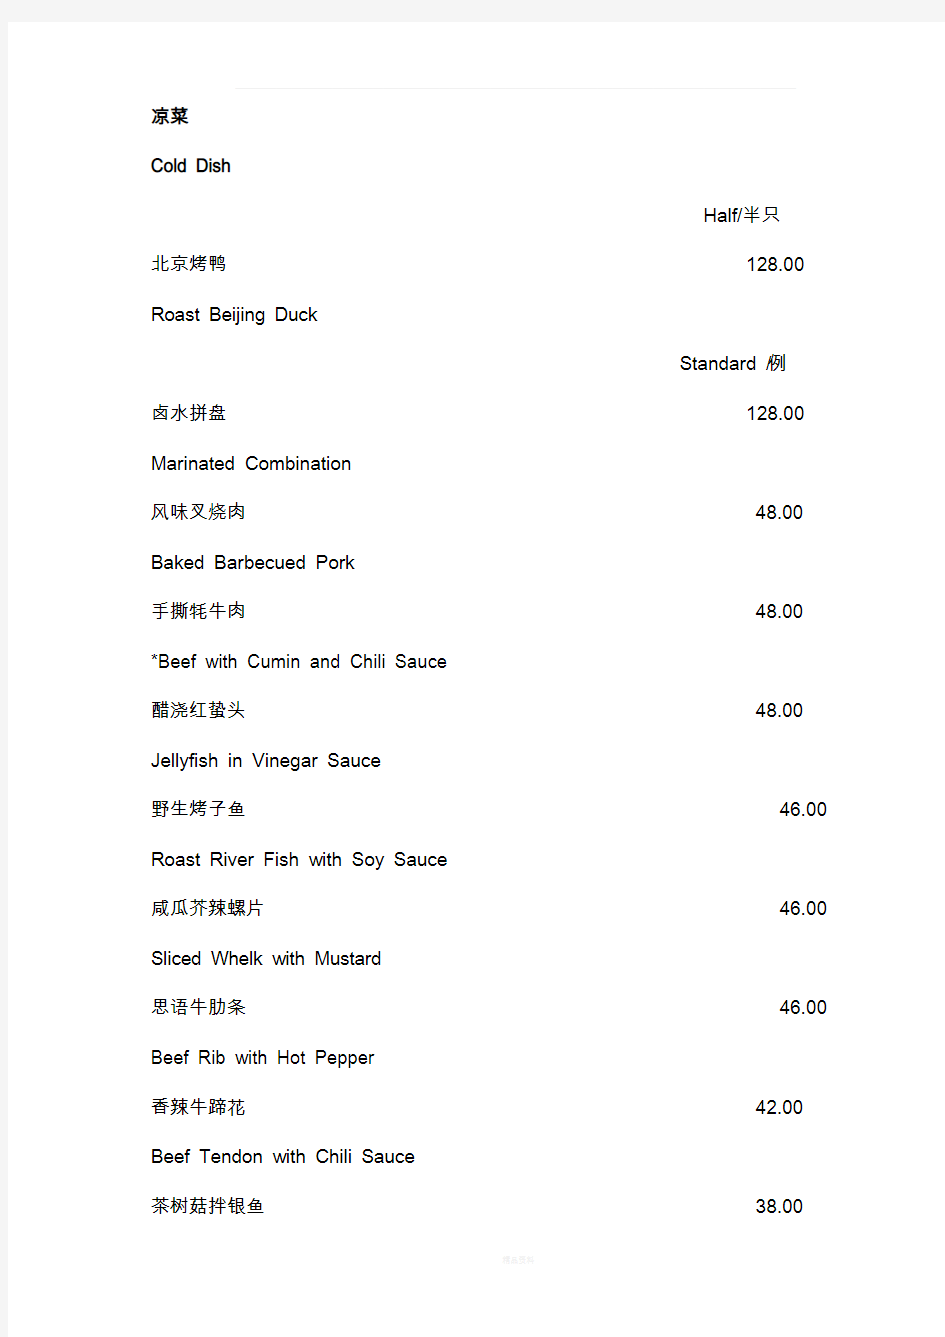 中餐菜单中英文对照